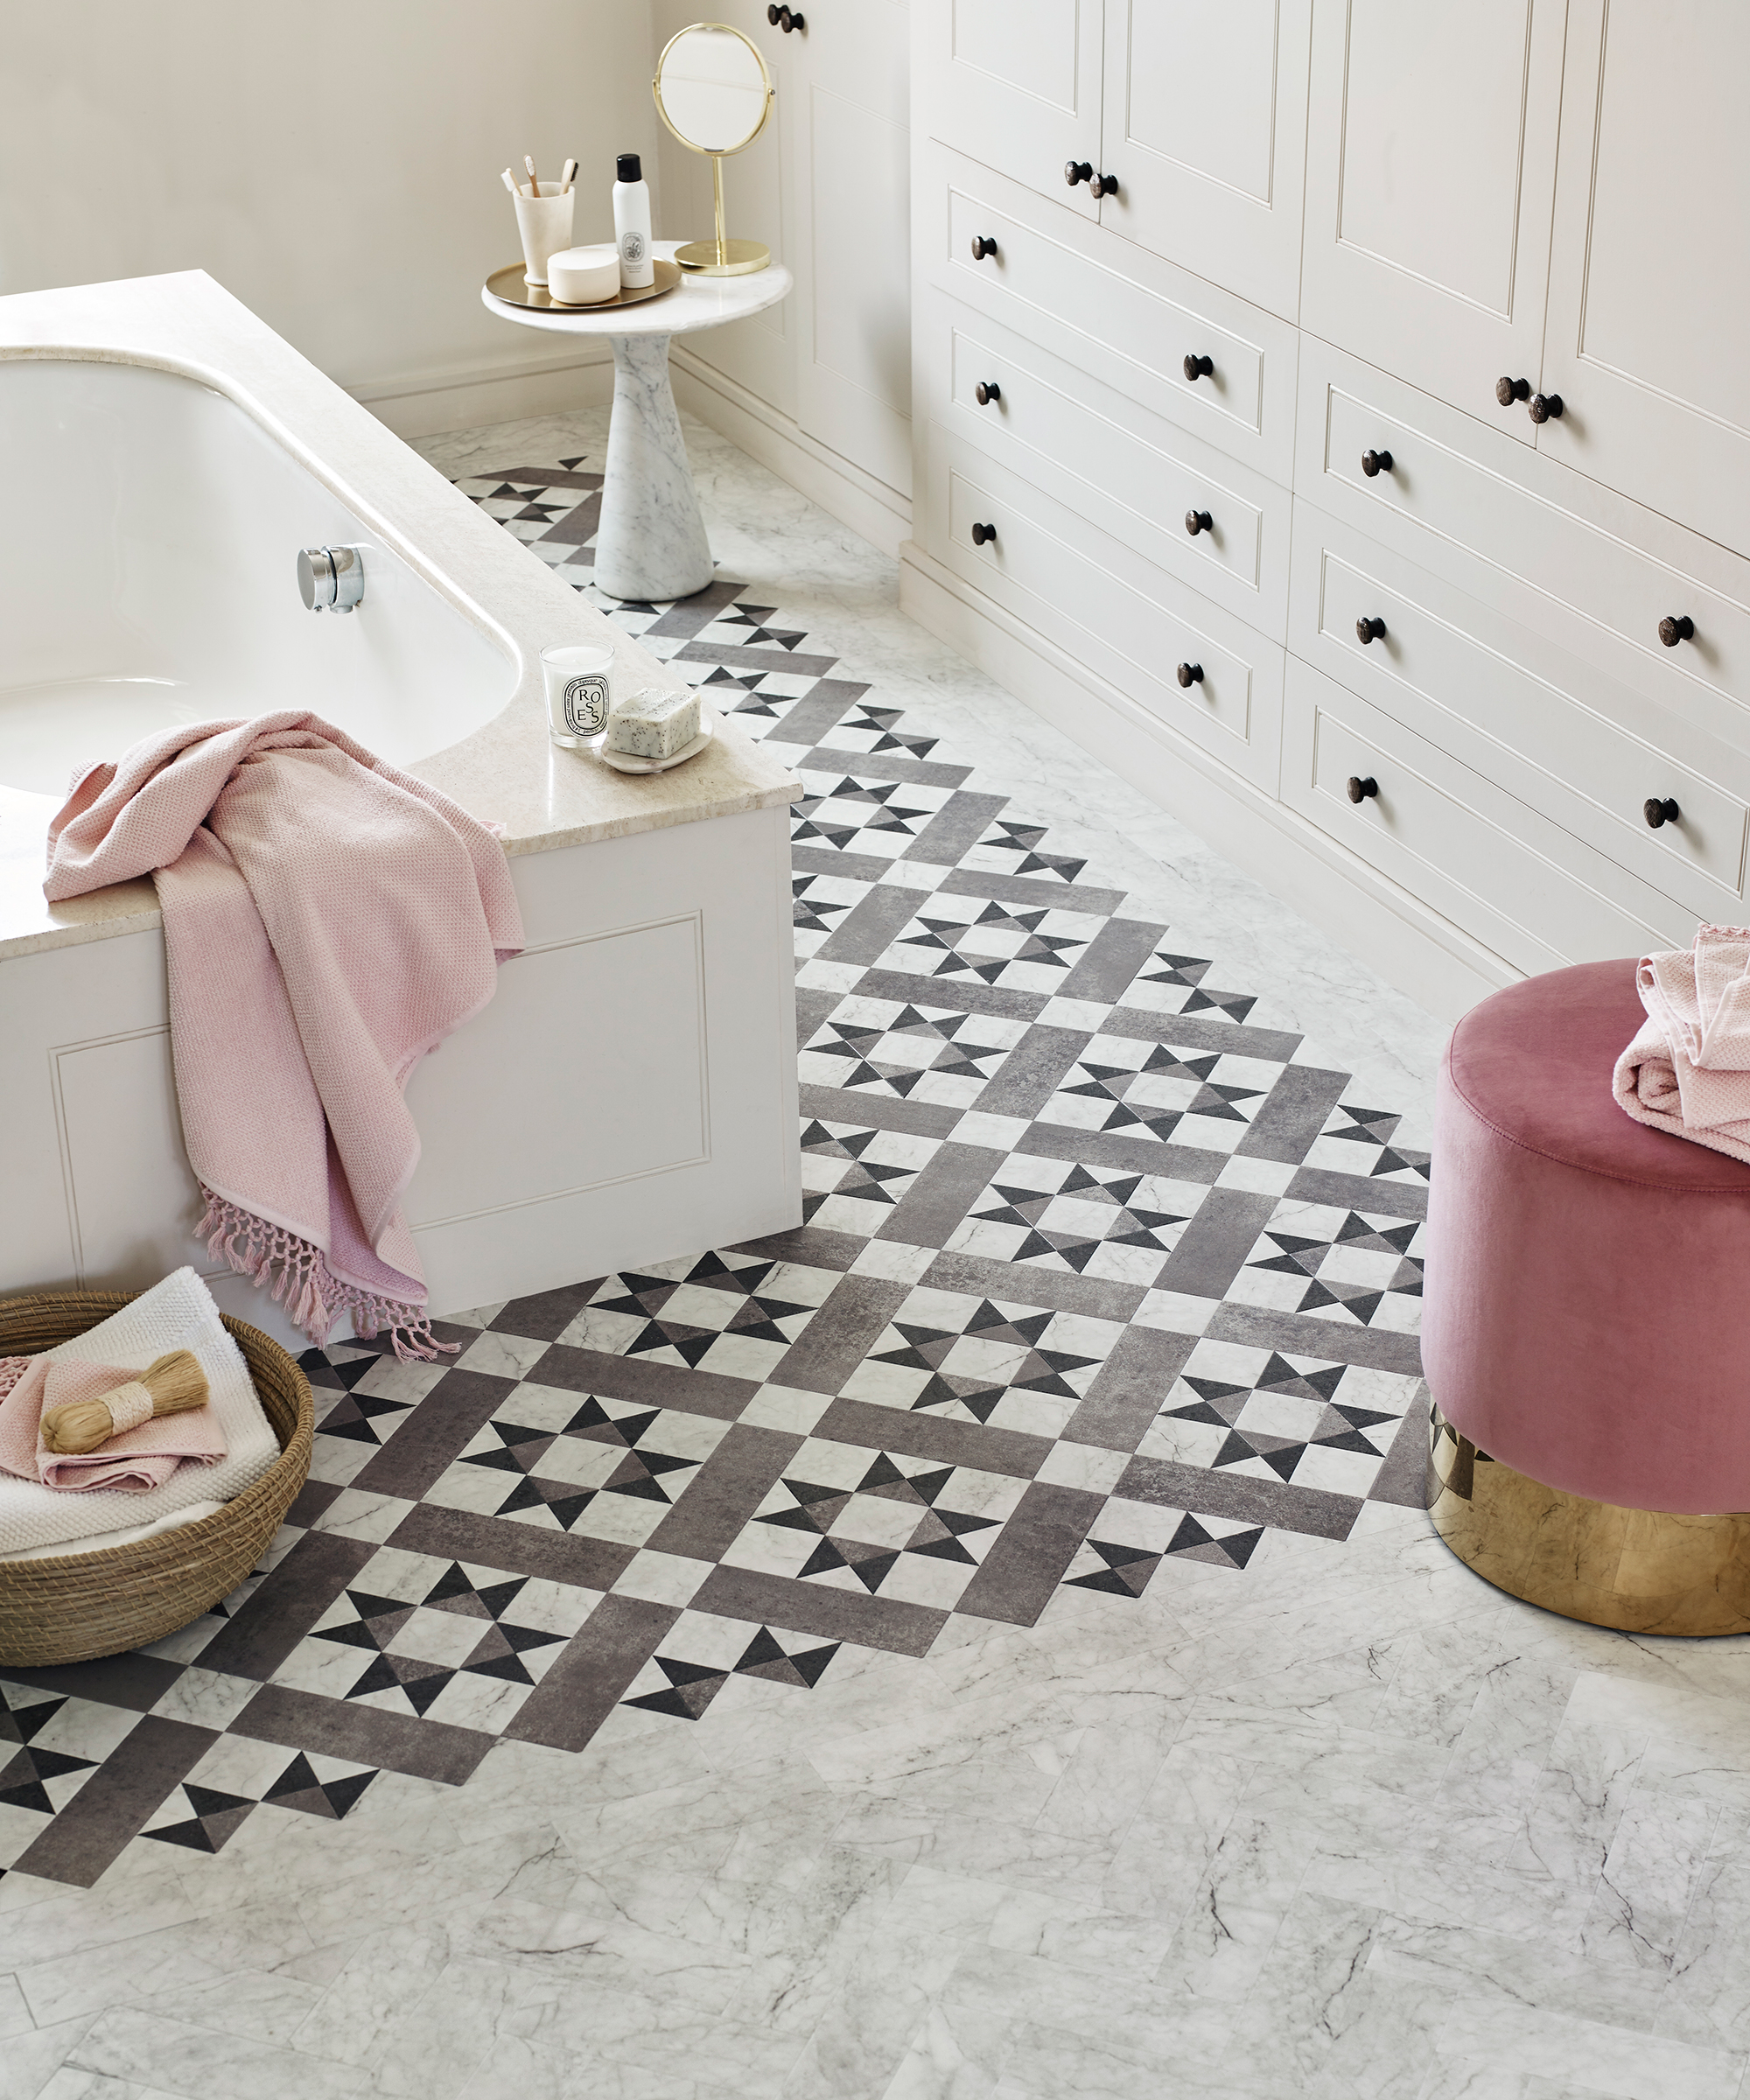 Gray Bathroom Tile Ideas 10 Ways To, Bathroom Floor Tiles Ideas